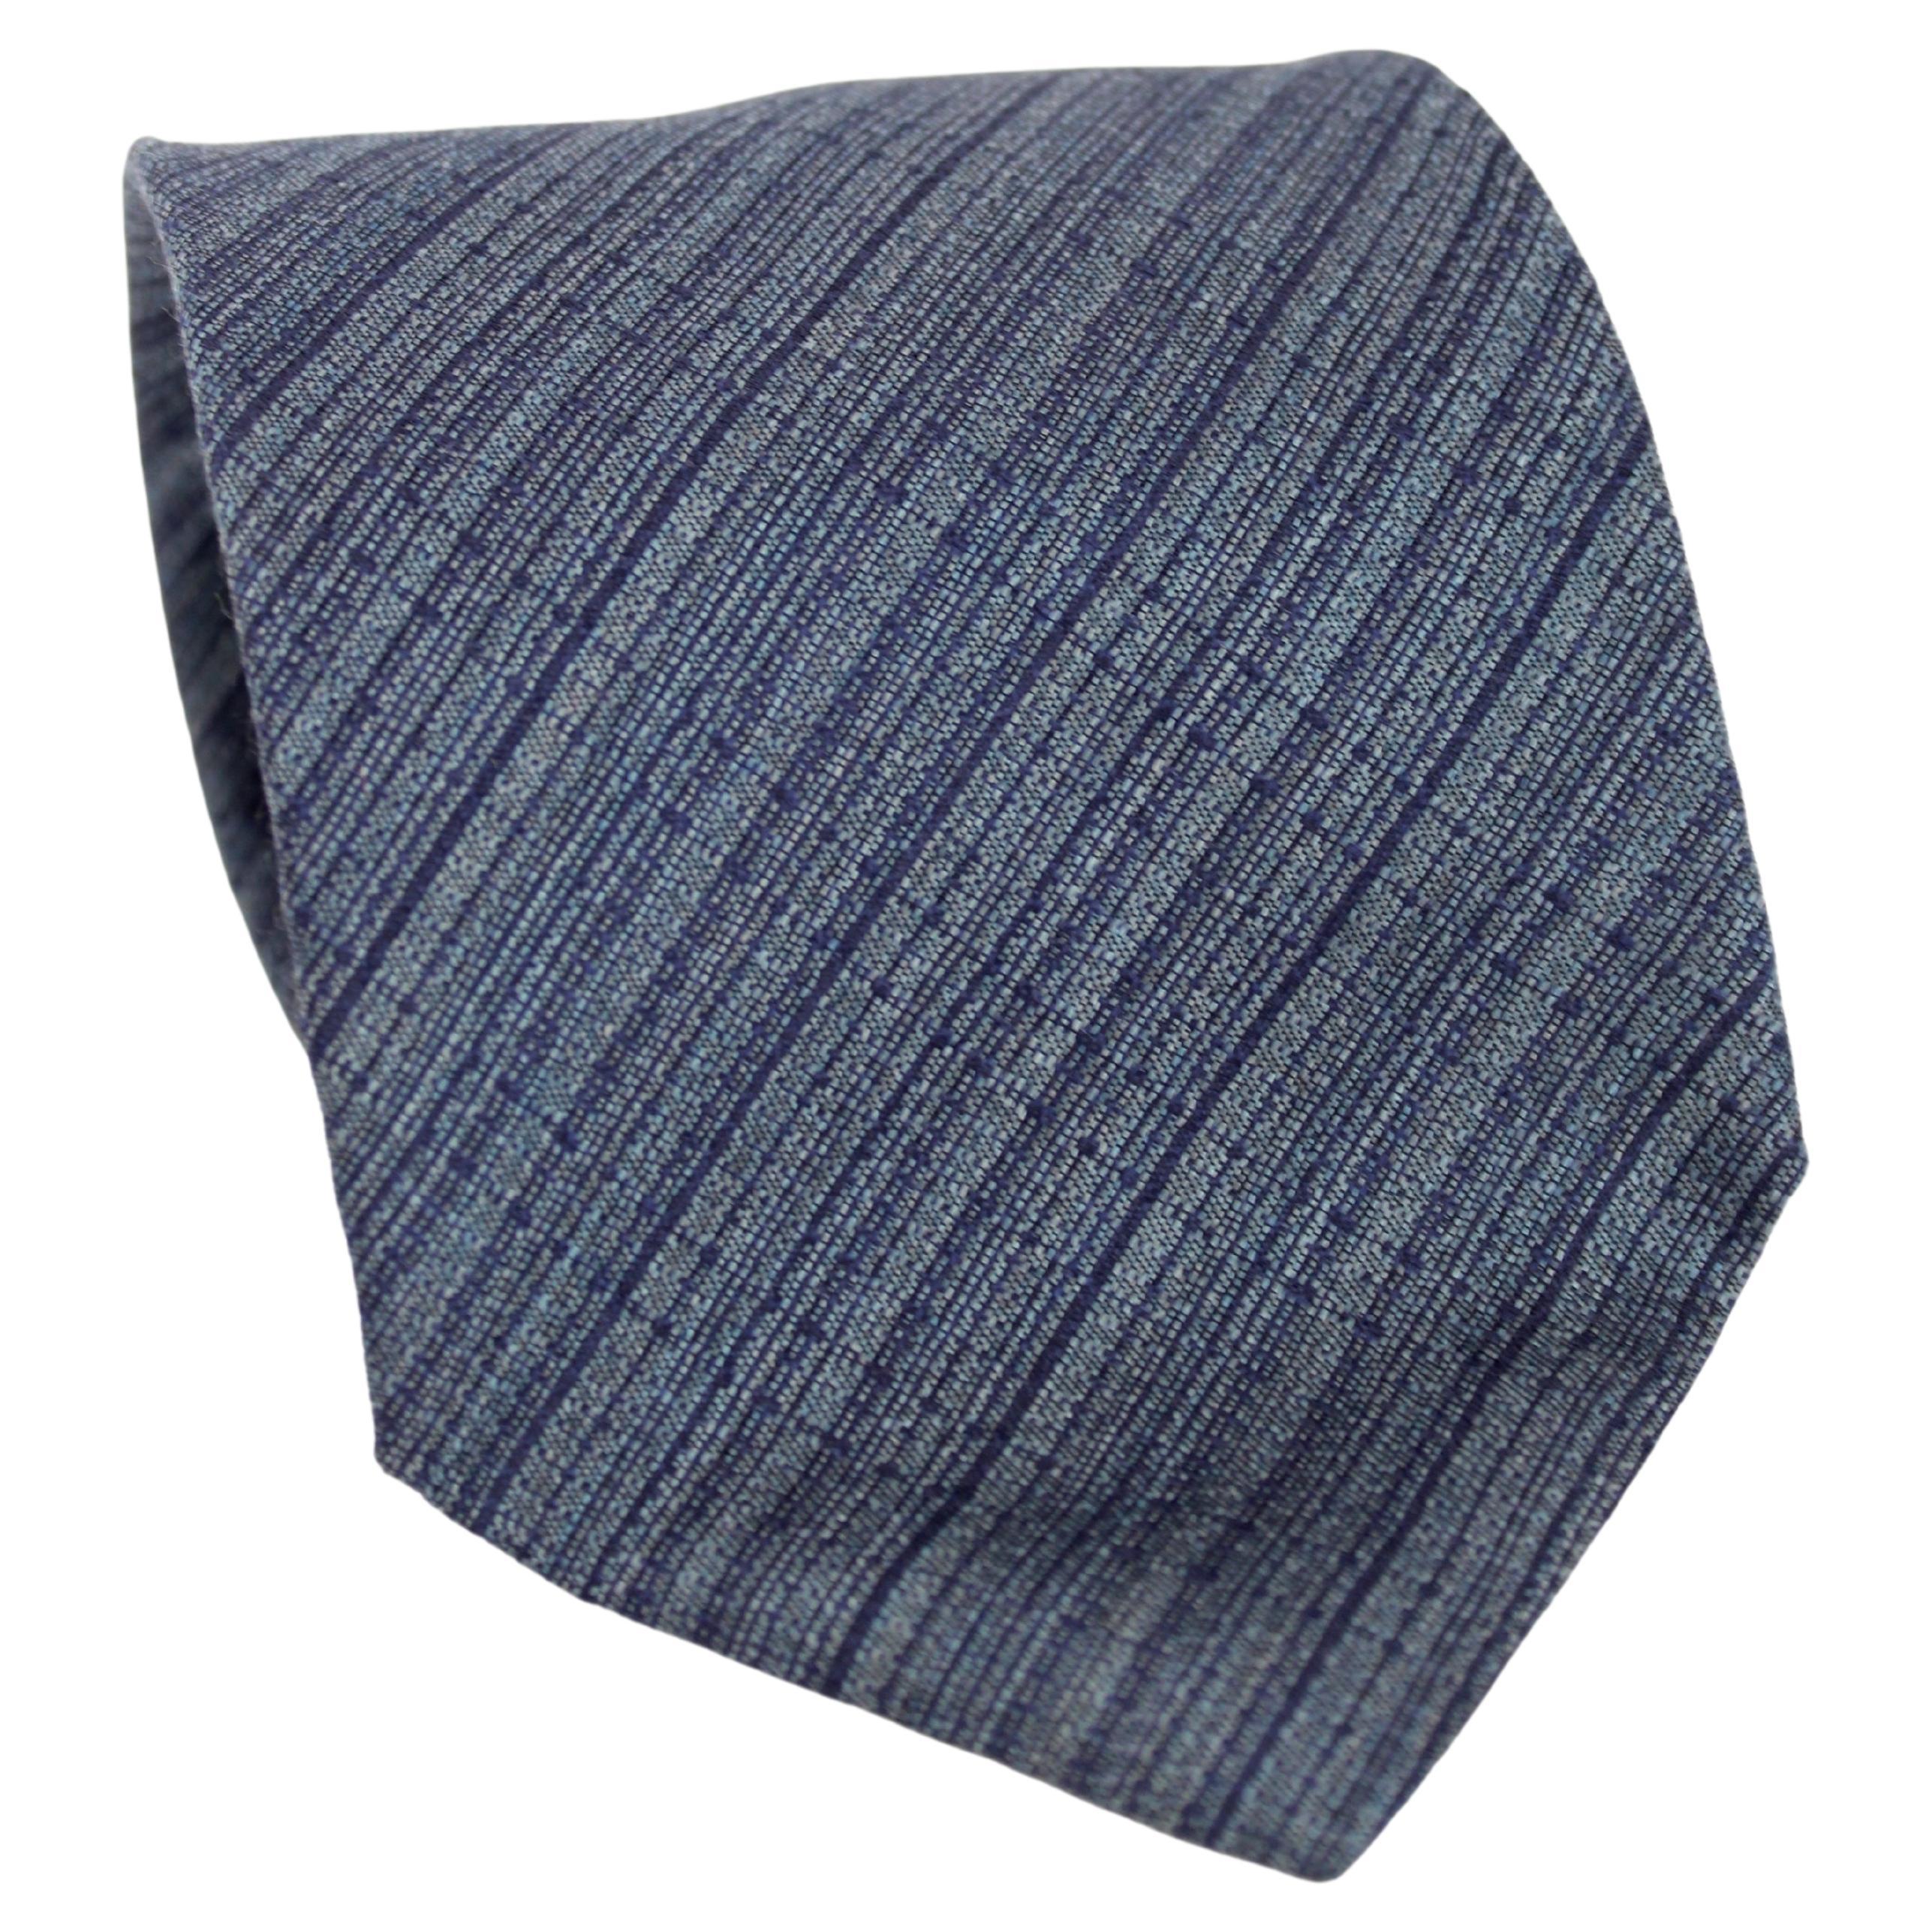 Yves Saint Laurent Rive Gauche - Cravate en soie bleue et grise